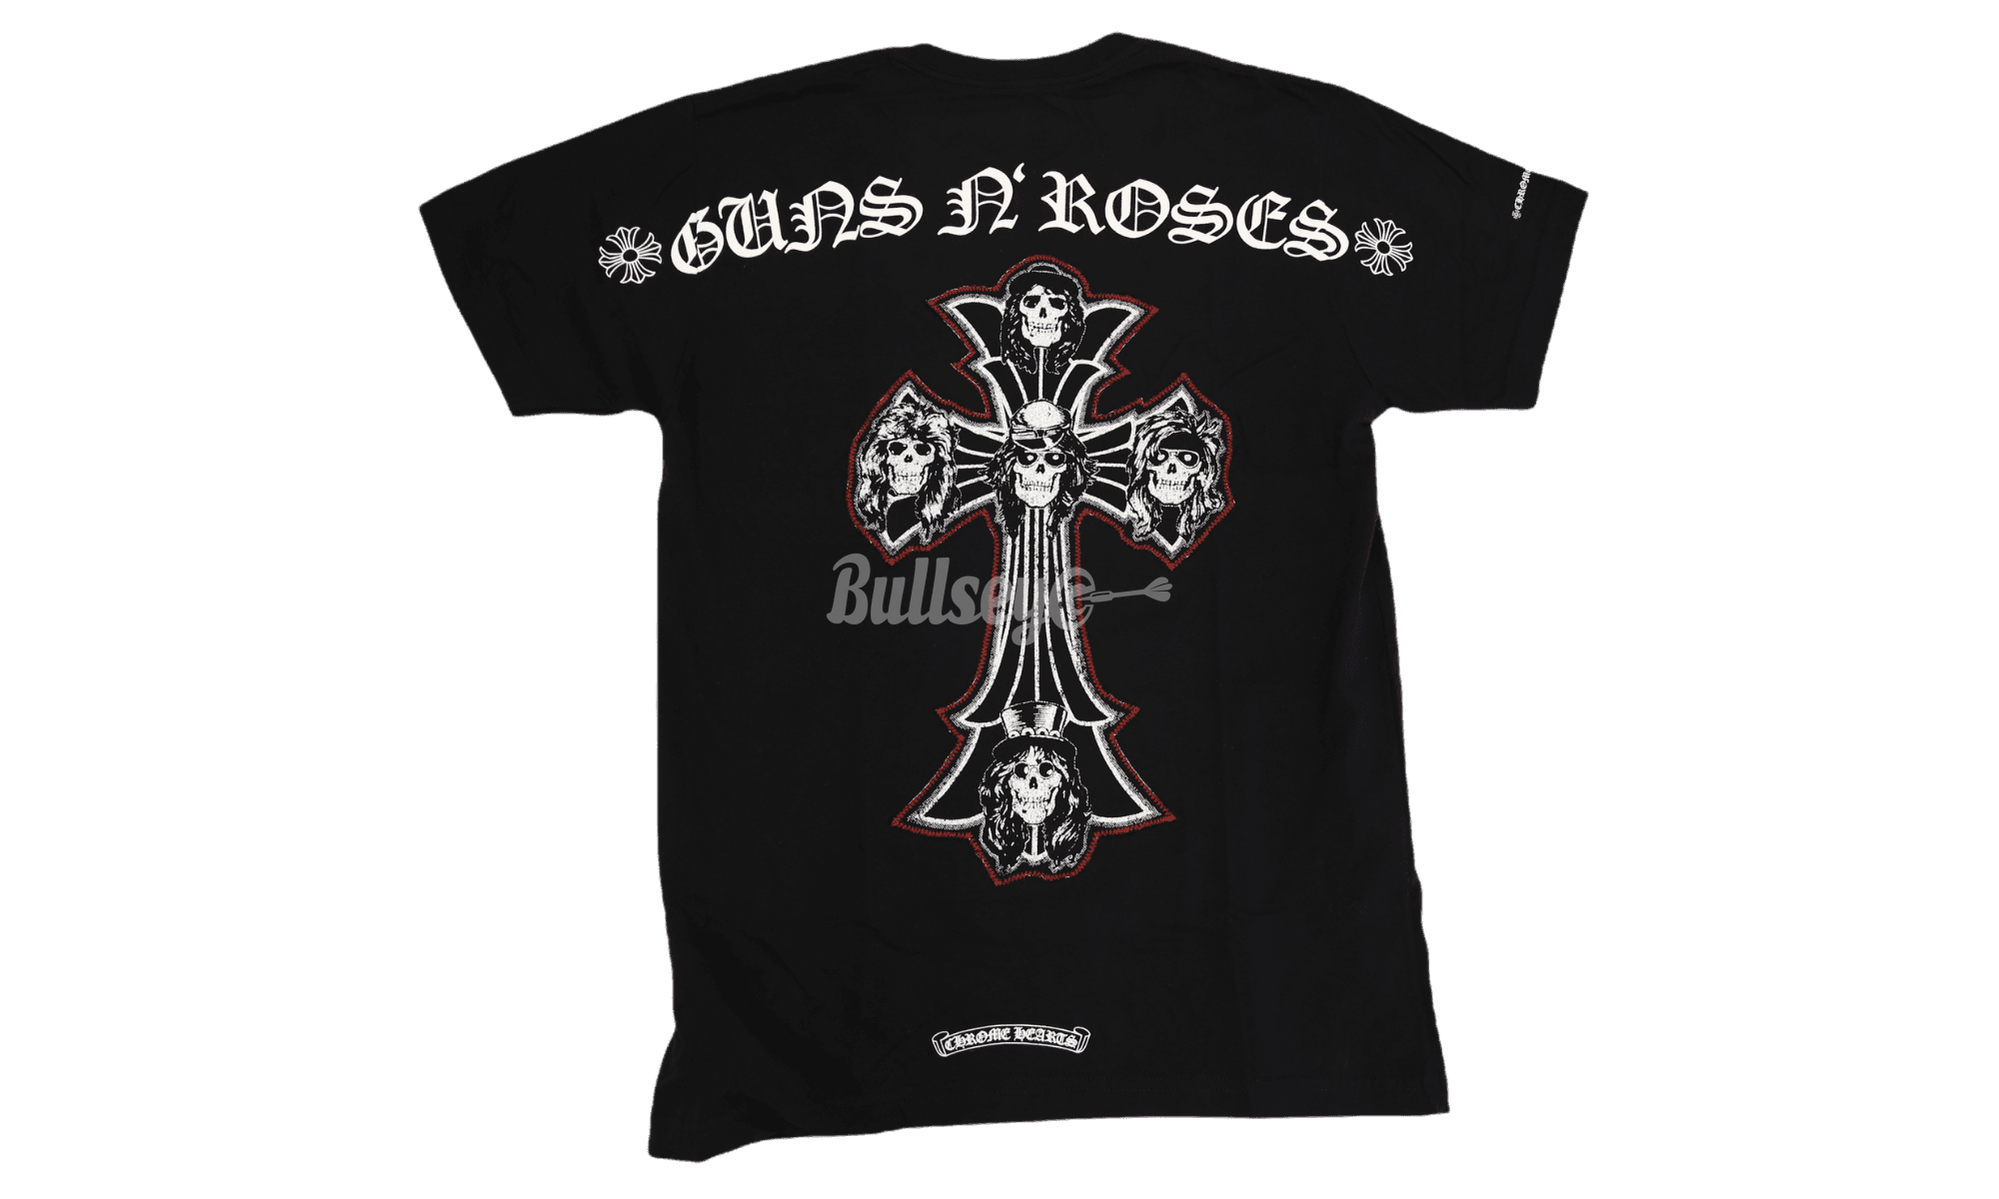 Chrome Hearts Guns N’ Roses Black T-Shirt